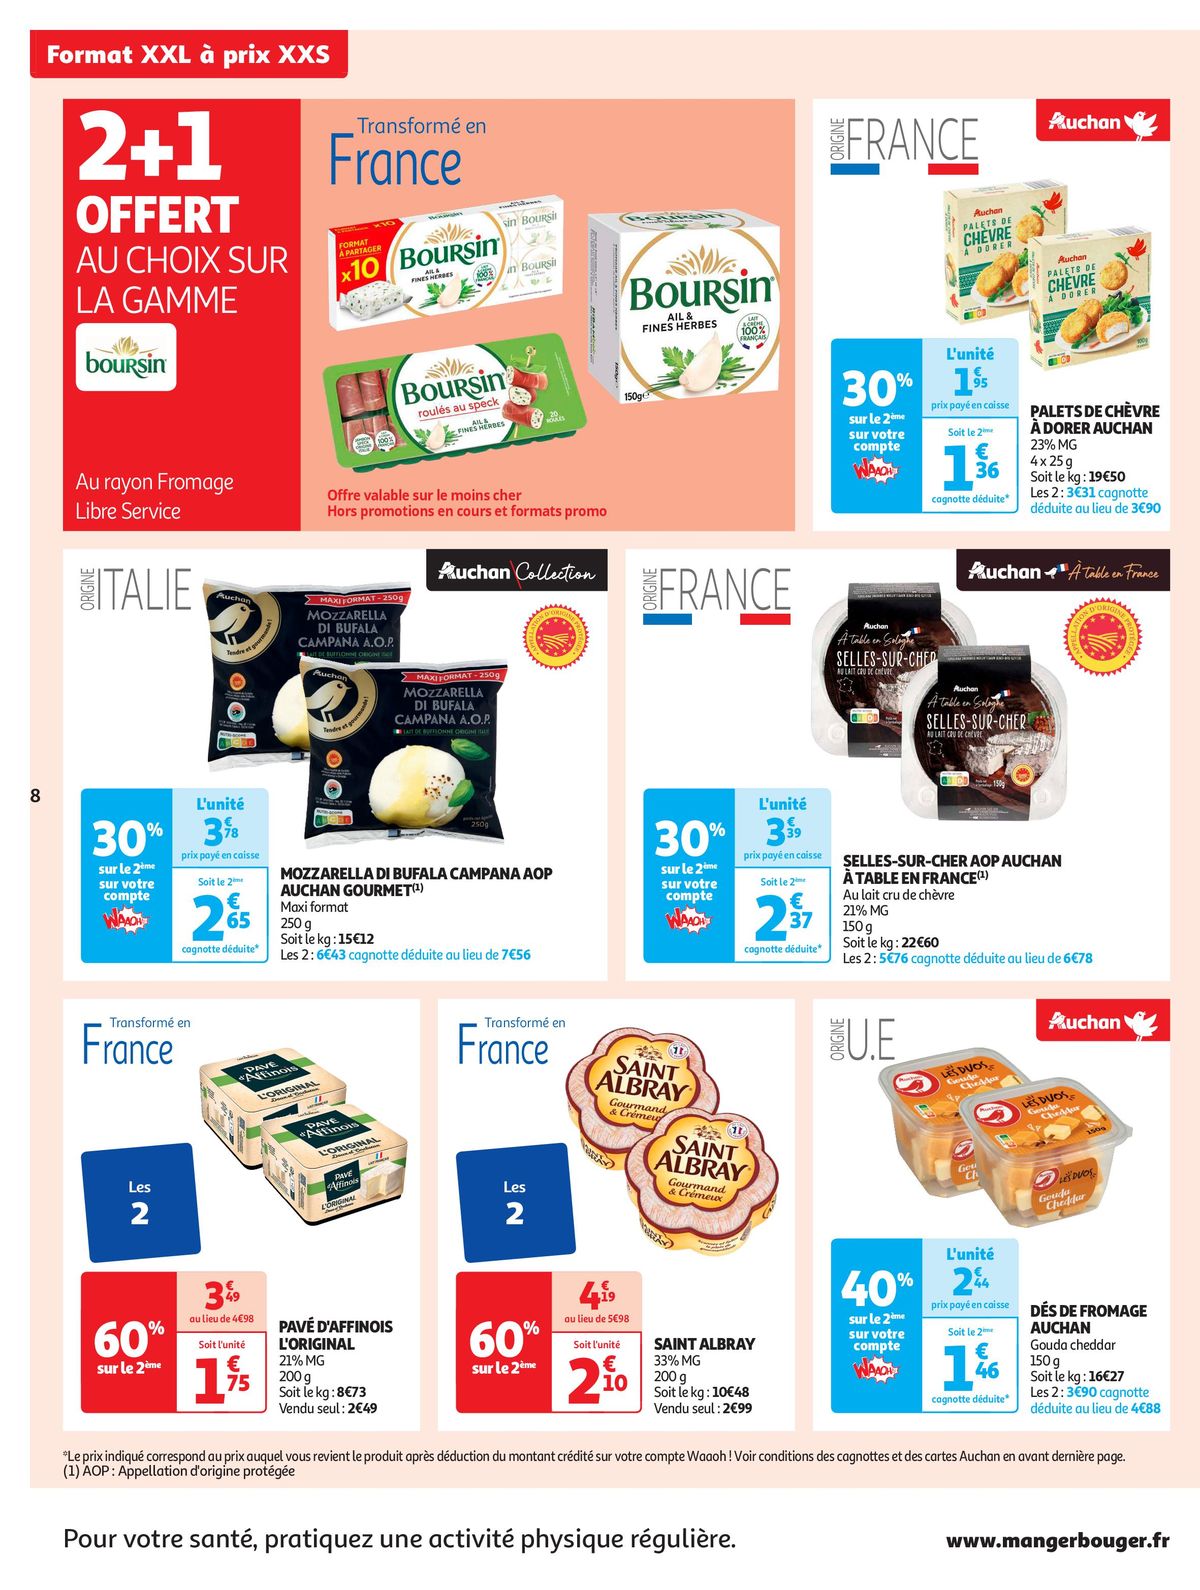 Catalogue Format XXL à prix XXS dans votre supermarché, page 00008